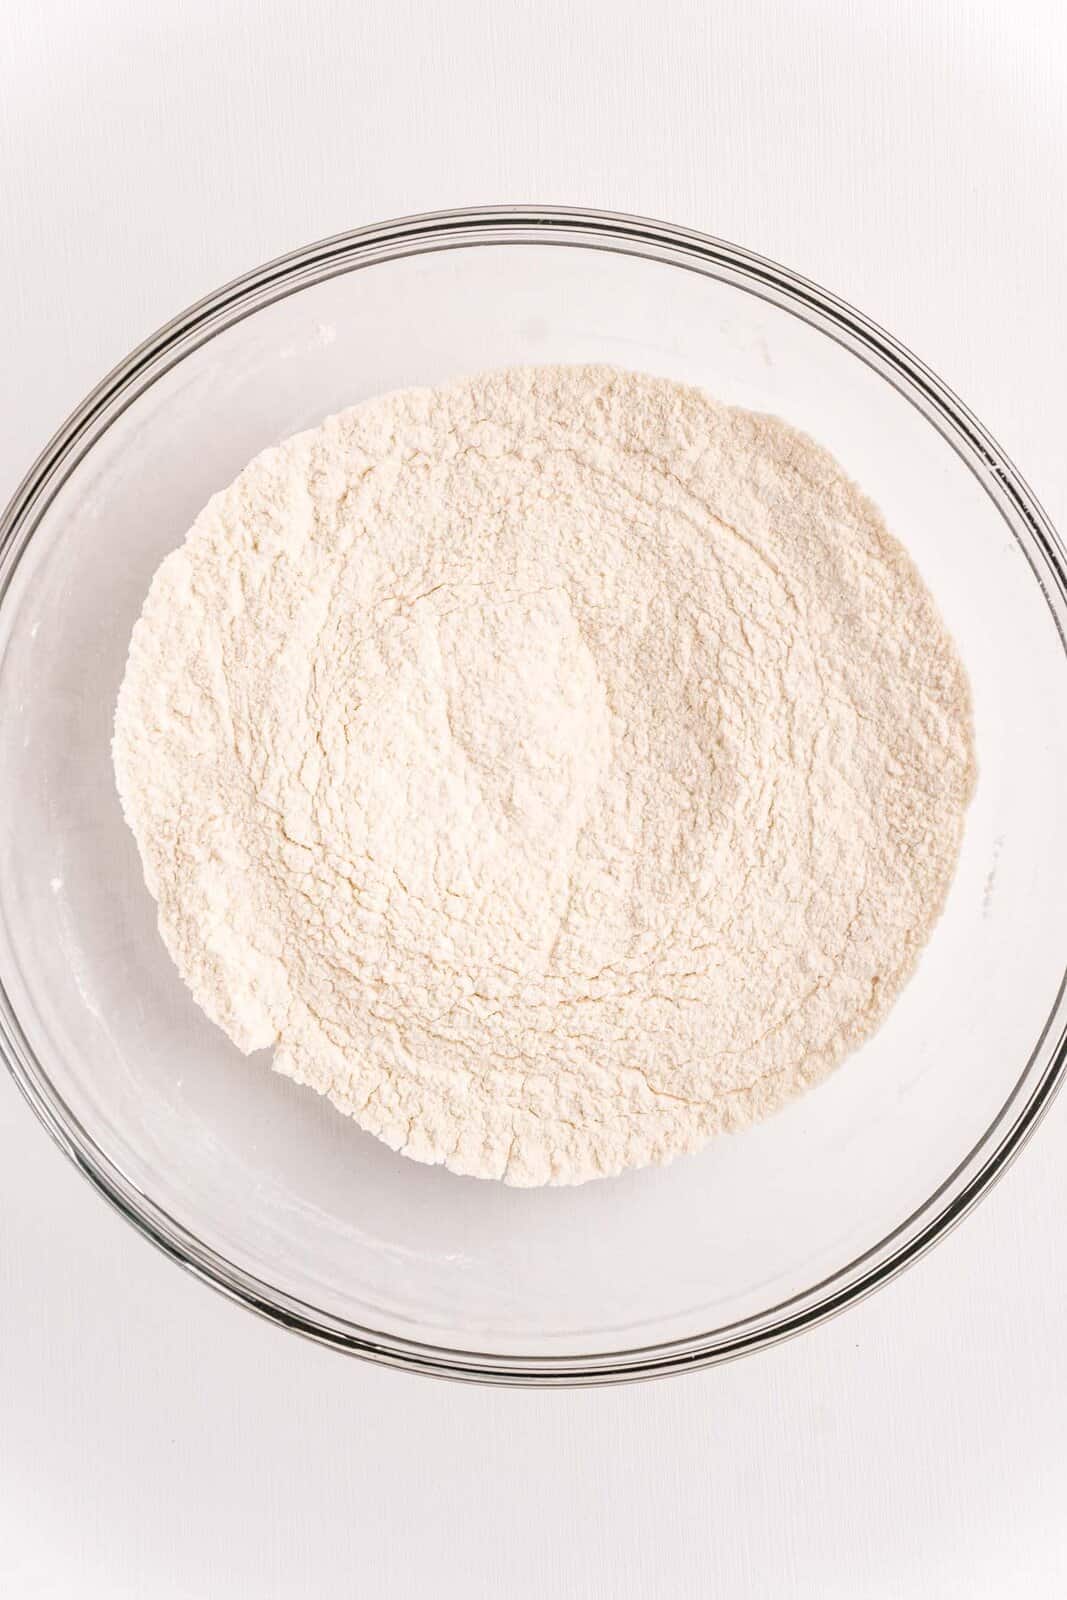 flour, sugar, salt and baking powder in a bowl.